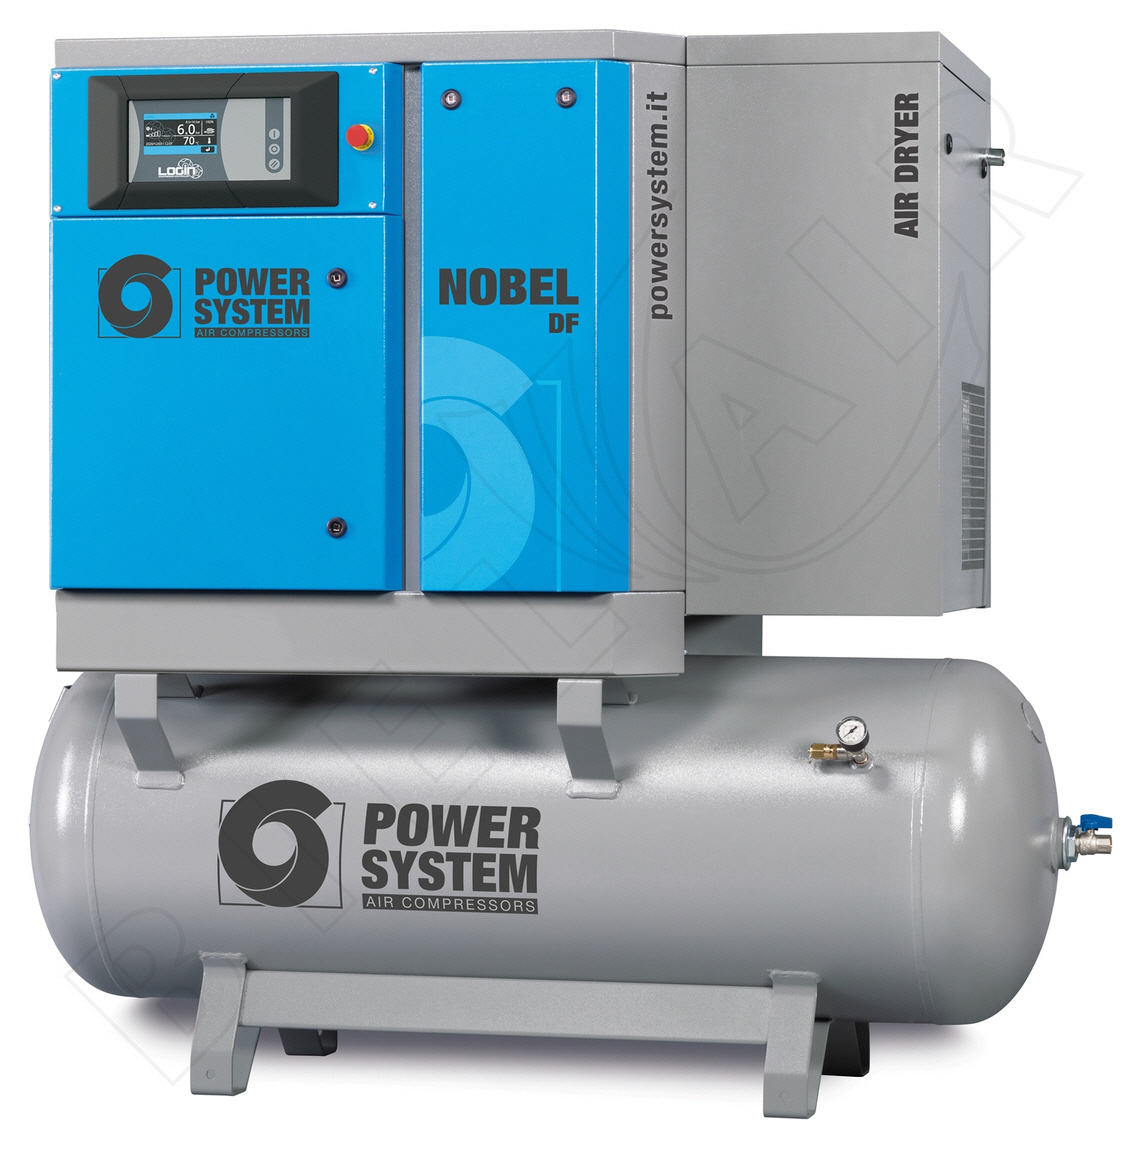 POWERSYSTEM Schraubenkompressor NOBEL 5.5-10 270 DF (IE3) LOGIN Standard mit Behälter und Kältetrockner